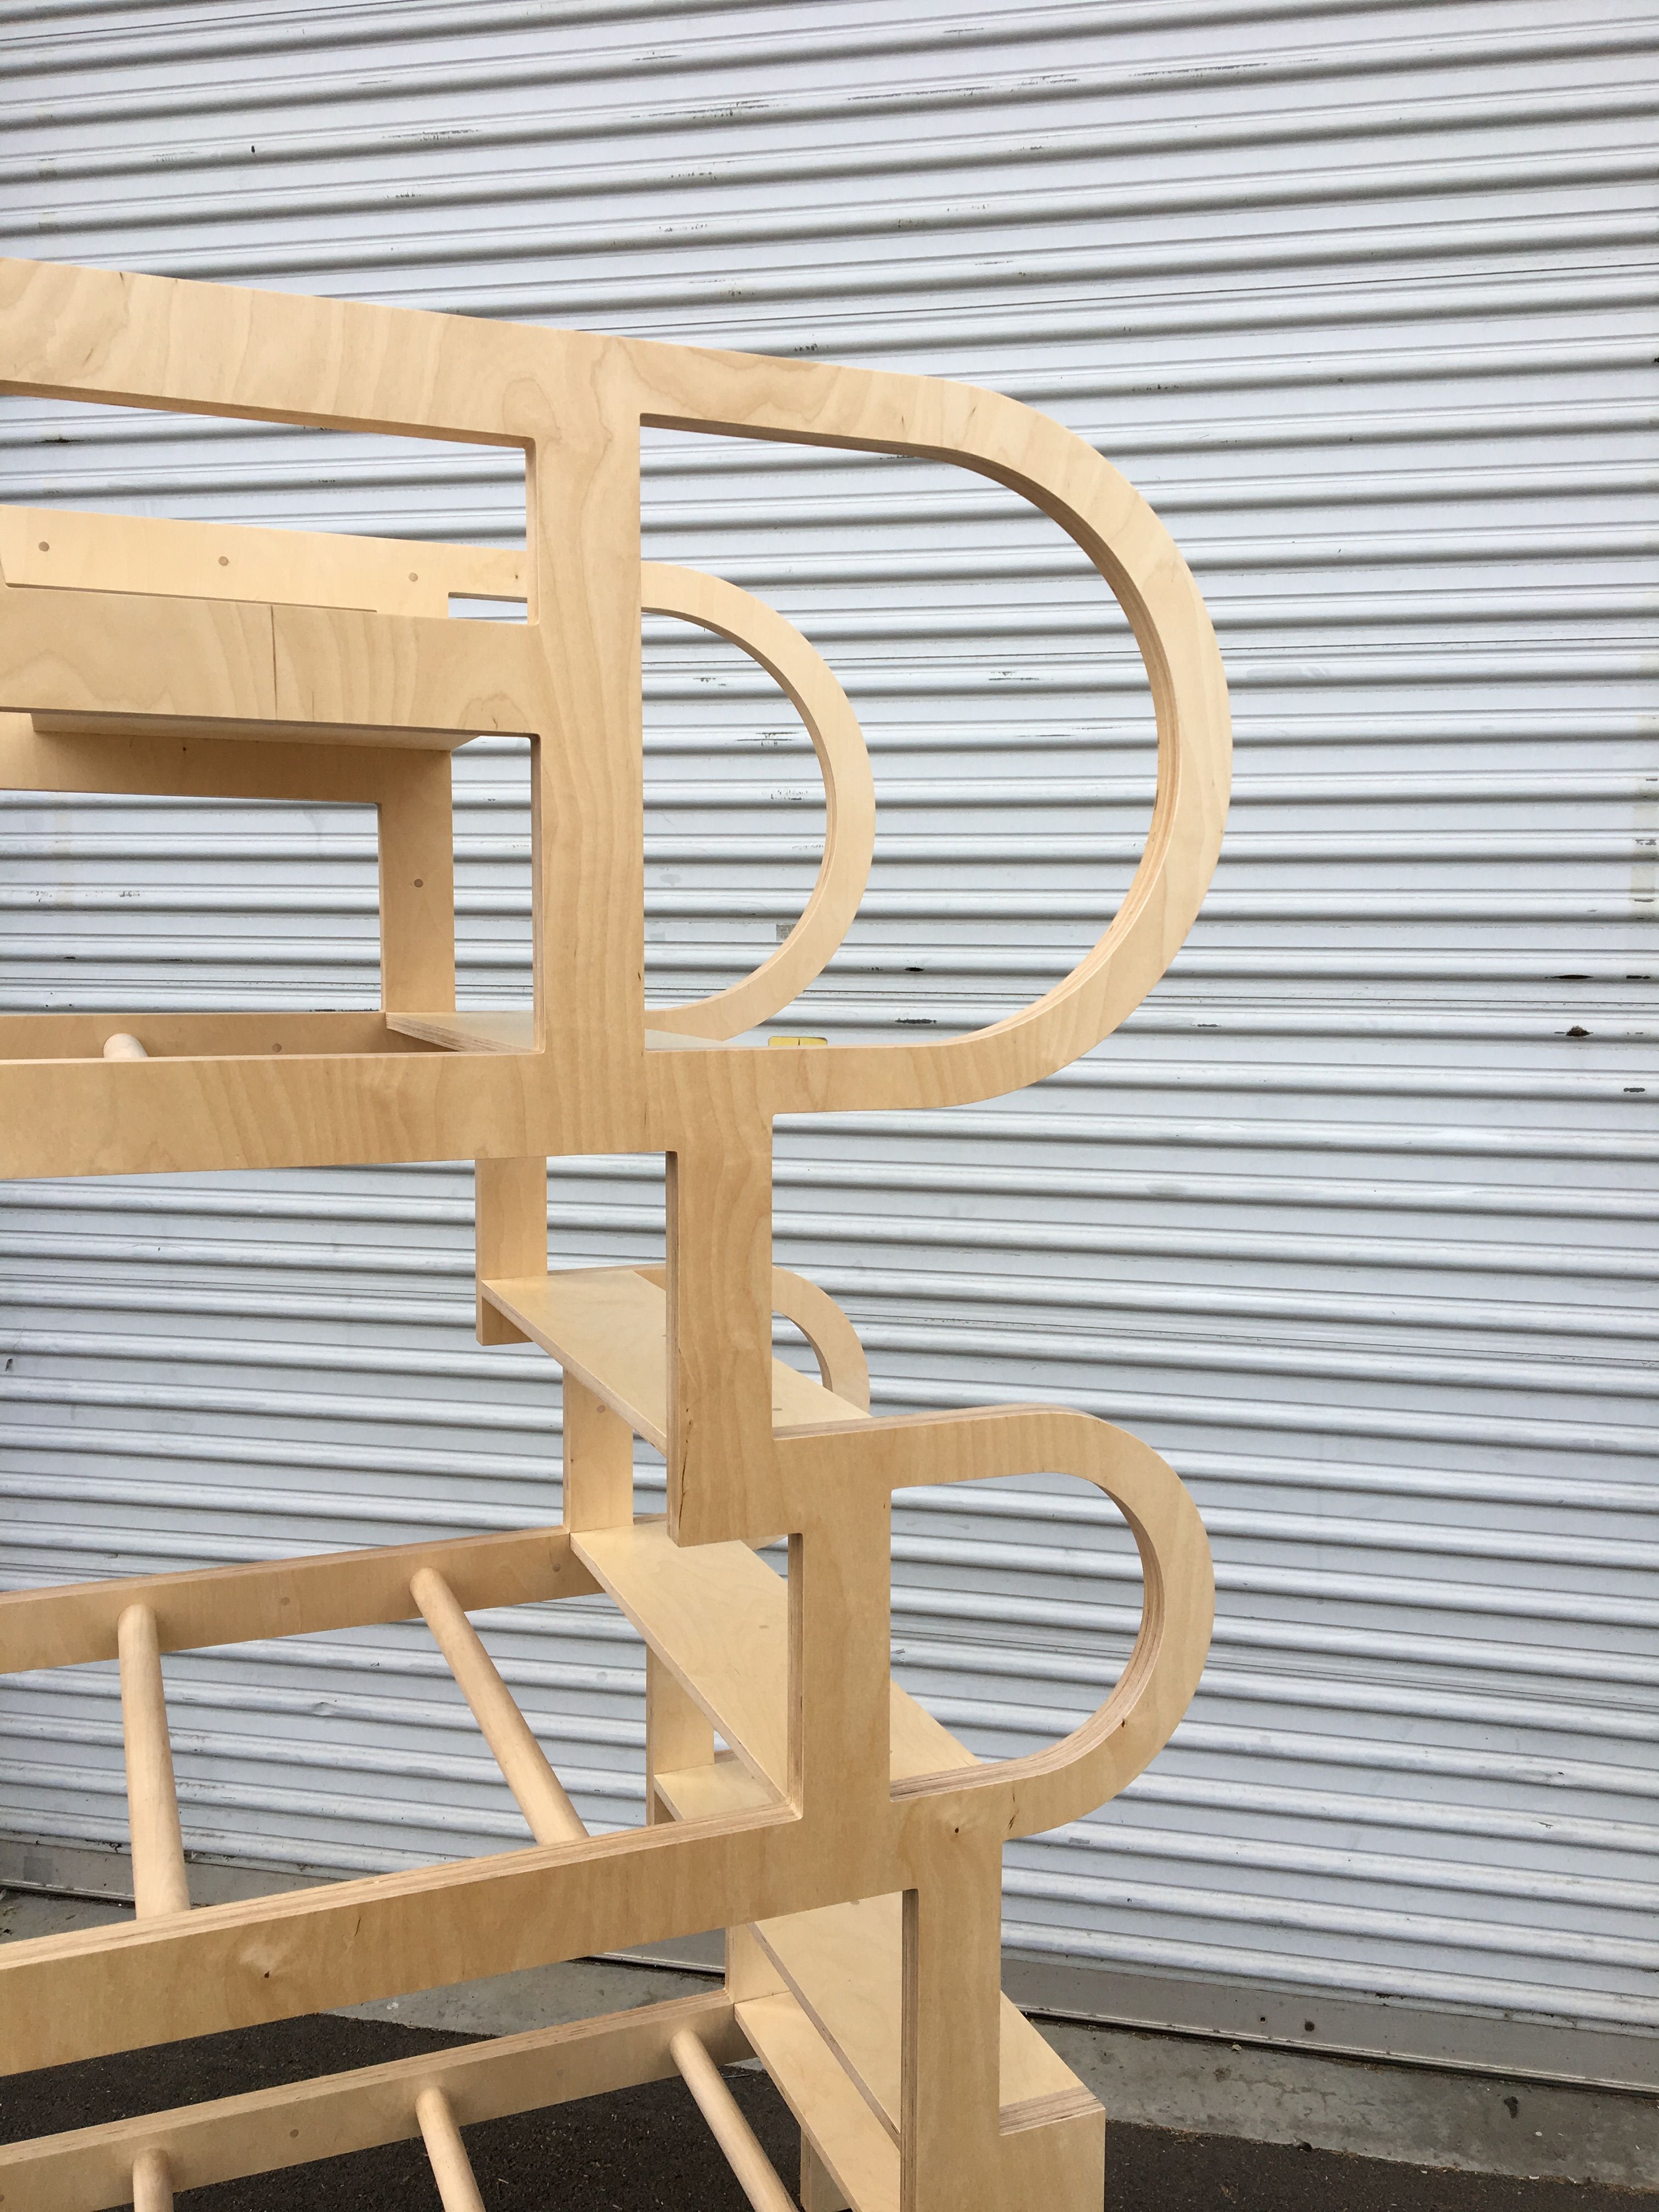  Climbable Chair - Owl Bureau x Adidas / Abbott Kinney Festival product image 14